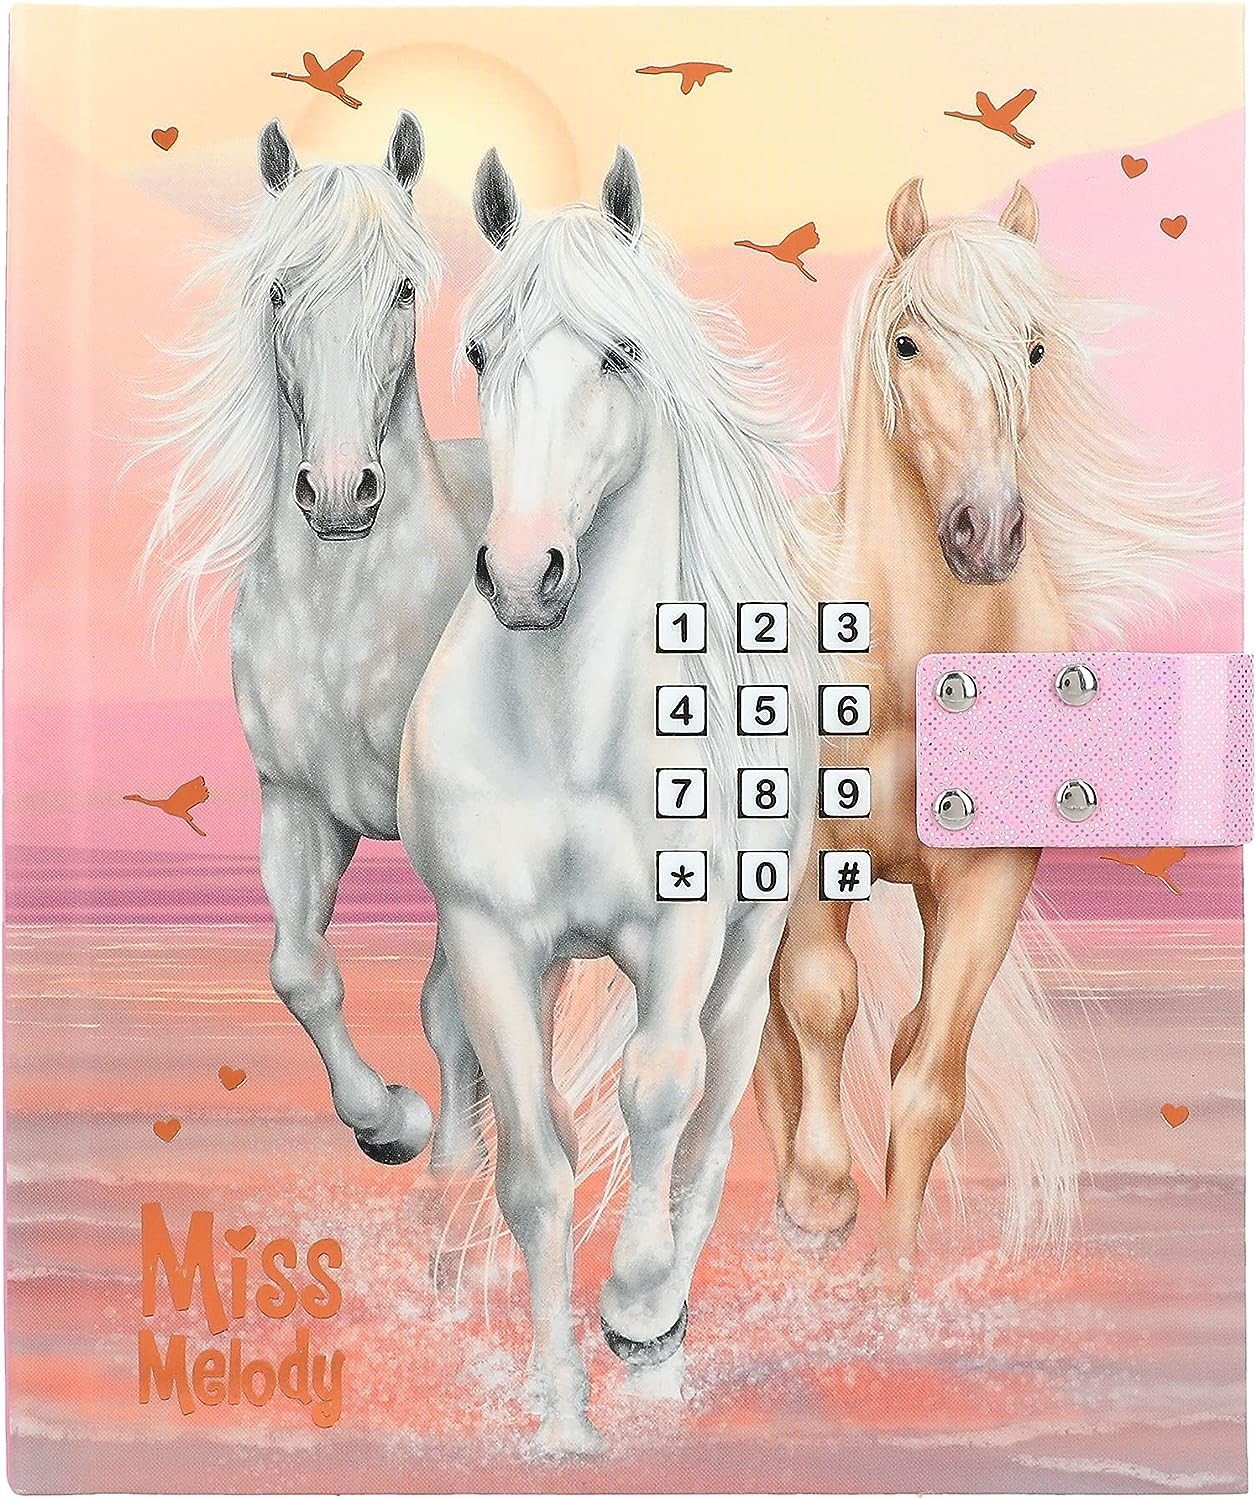 Miss Melody, 3498599, zápisník s číselným kódováním, koně při západu slunce